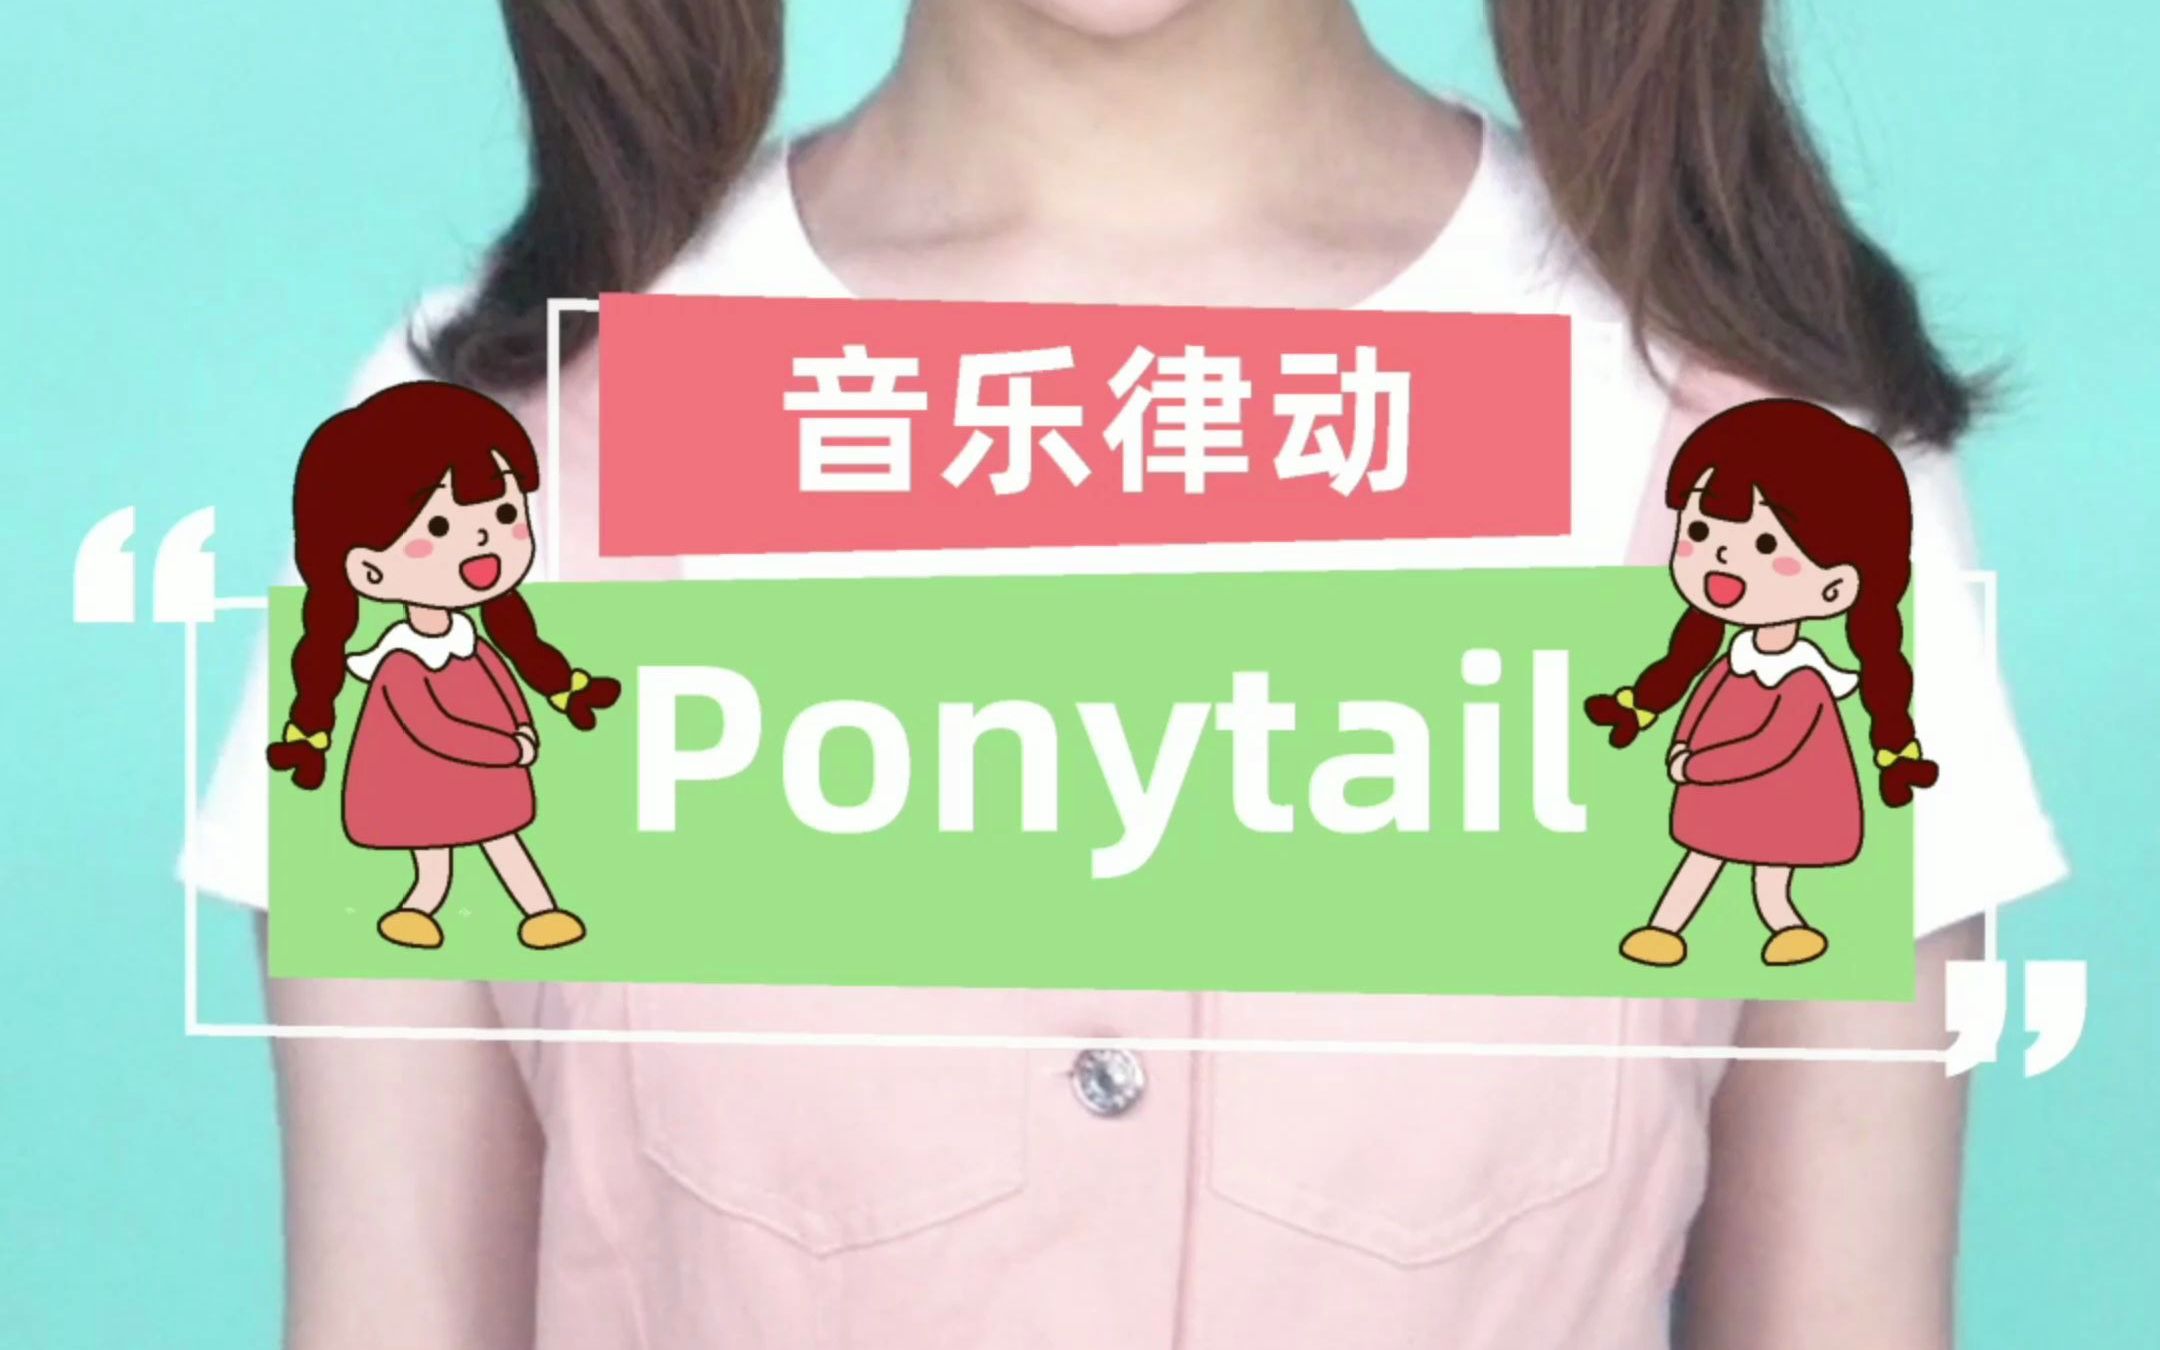 音乐律动｜「Ponytail」古灵精怪的小可爱上线惹~